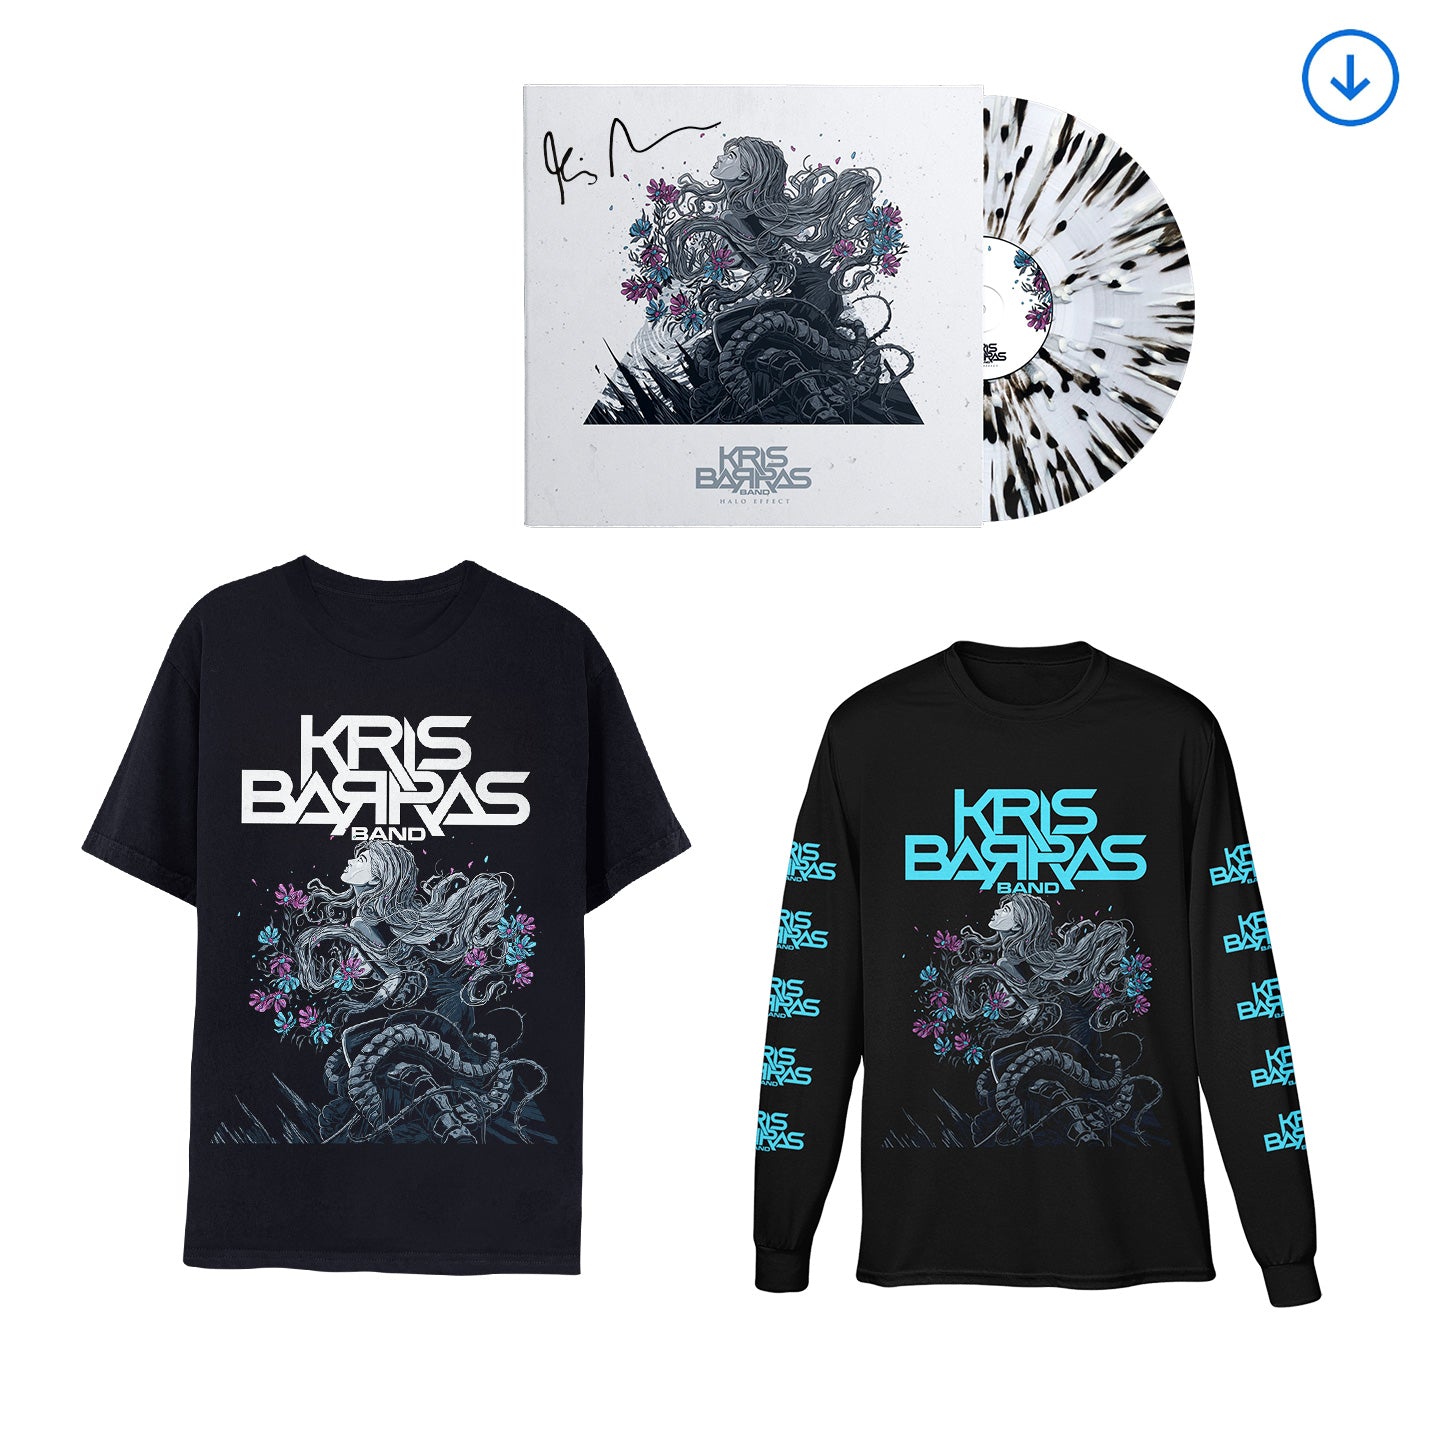 Kris Barras Band "Halo Effect" SIGNED Splatter Vinyl, Download & Short or Long Sleeve T shirt - PRE-ORDER